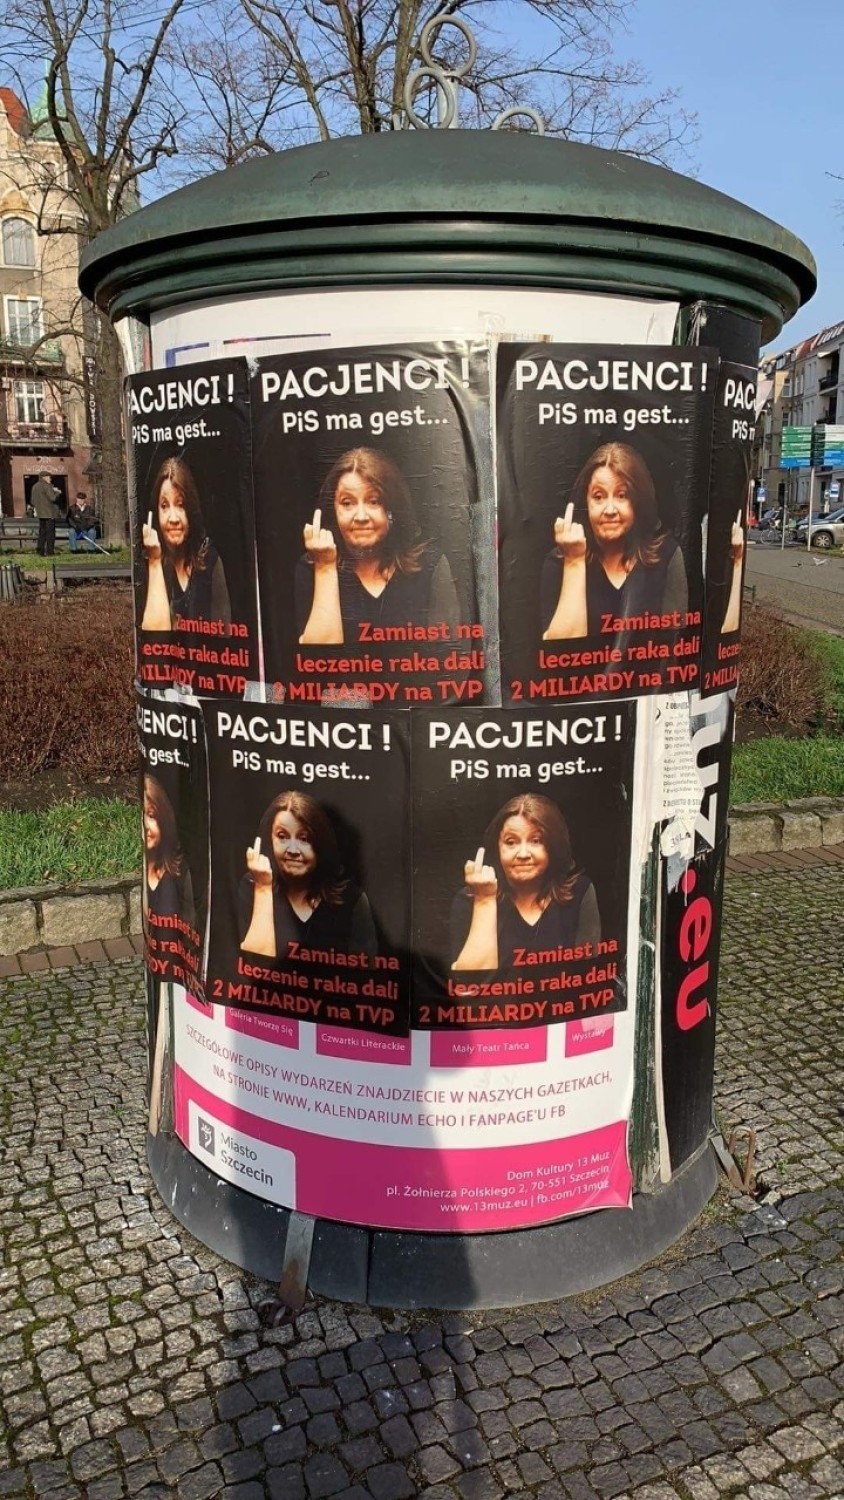 Posłanka Lichocka na plakatach w Szczecinie